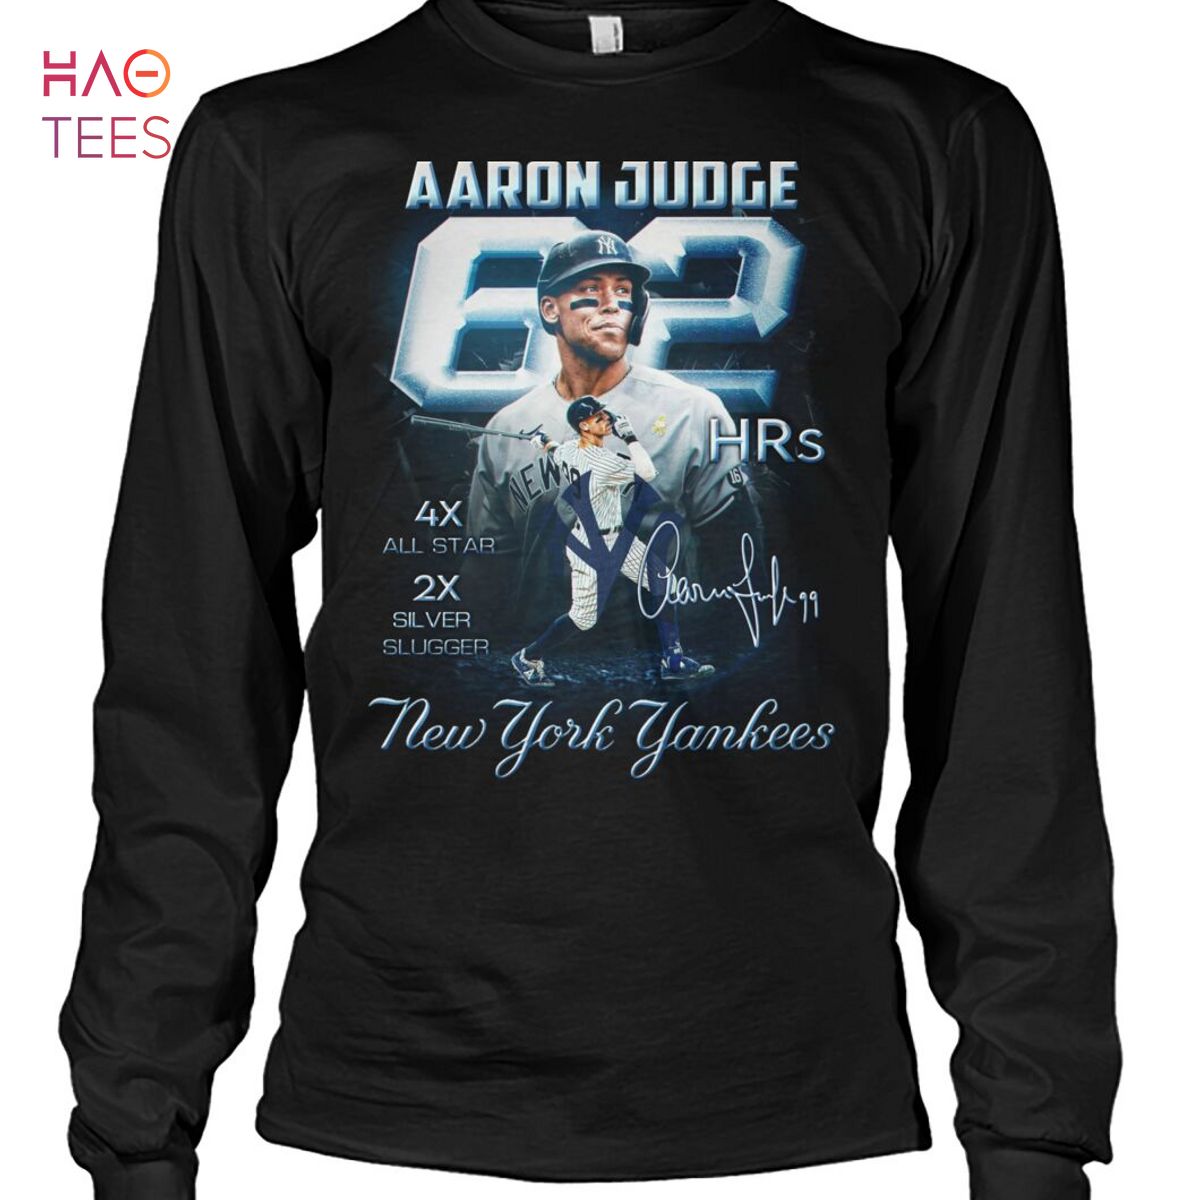 Judge Vintage Shirt, Aaron Judge Trending Design Sweatshirt